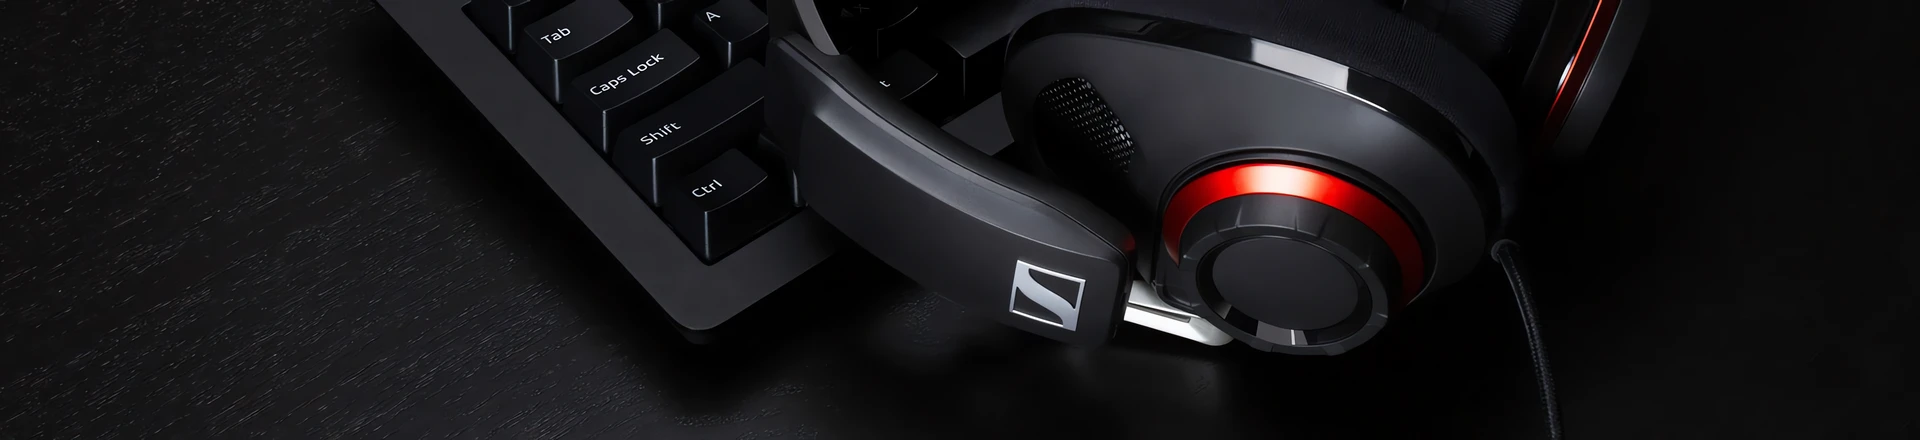 GSP 500 - Sennheiser pokazał nowy headset dla graczy